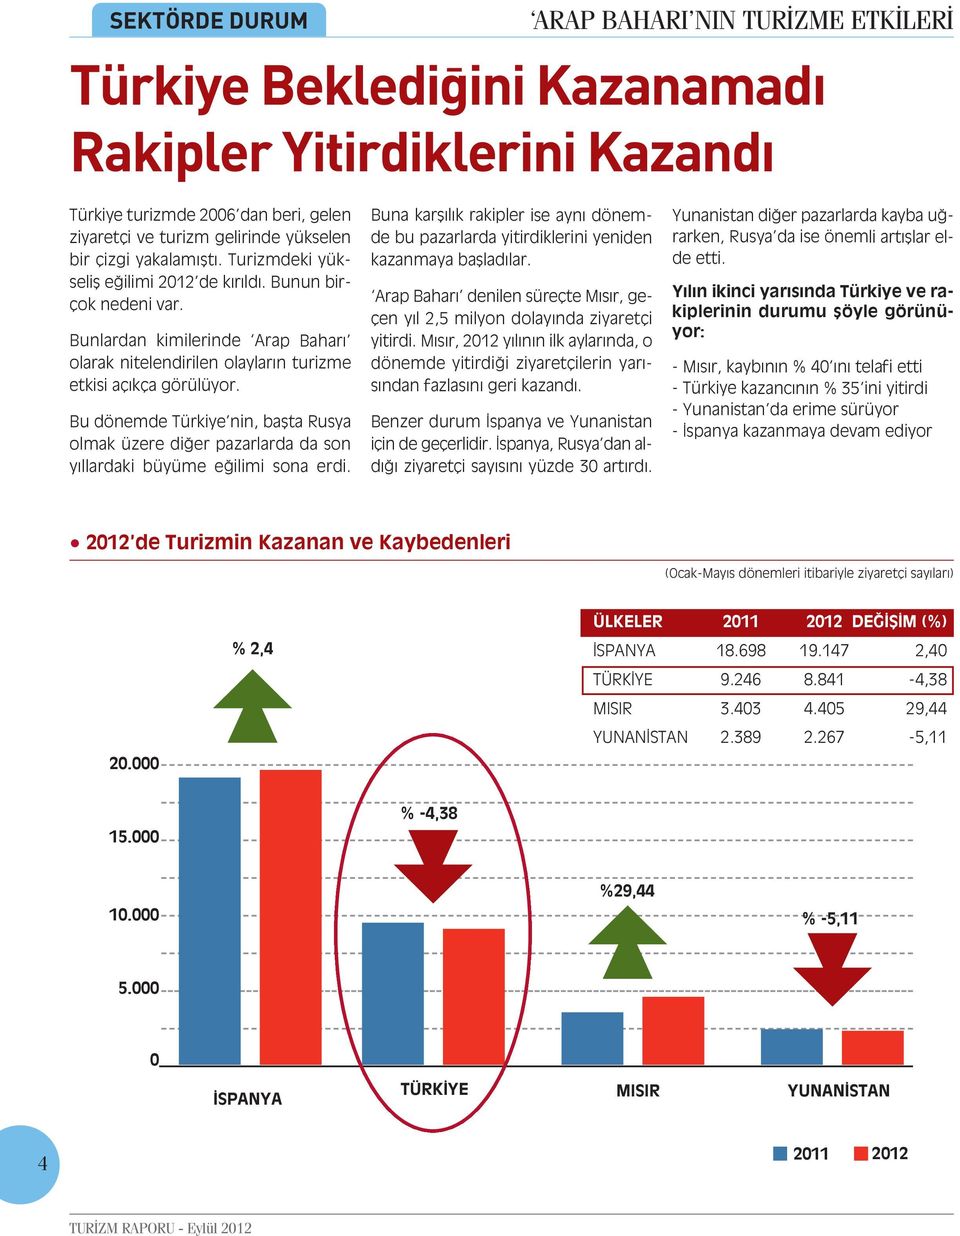 Bu dönemde Türkiye nin, başta Rusya olmak üzere diğer pazarlarda da son yıllardaki büyüme eğilimi sona erdi.